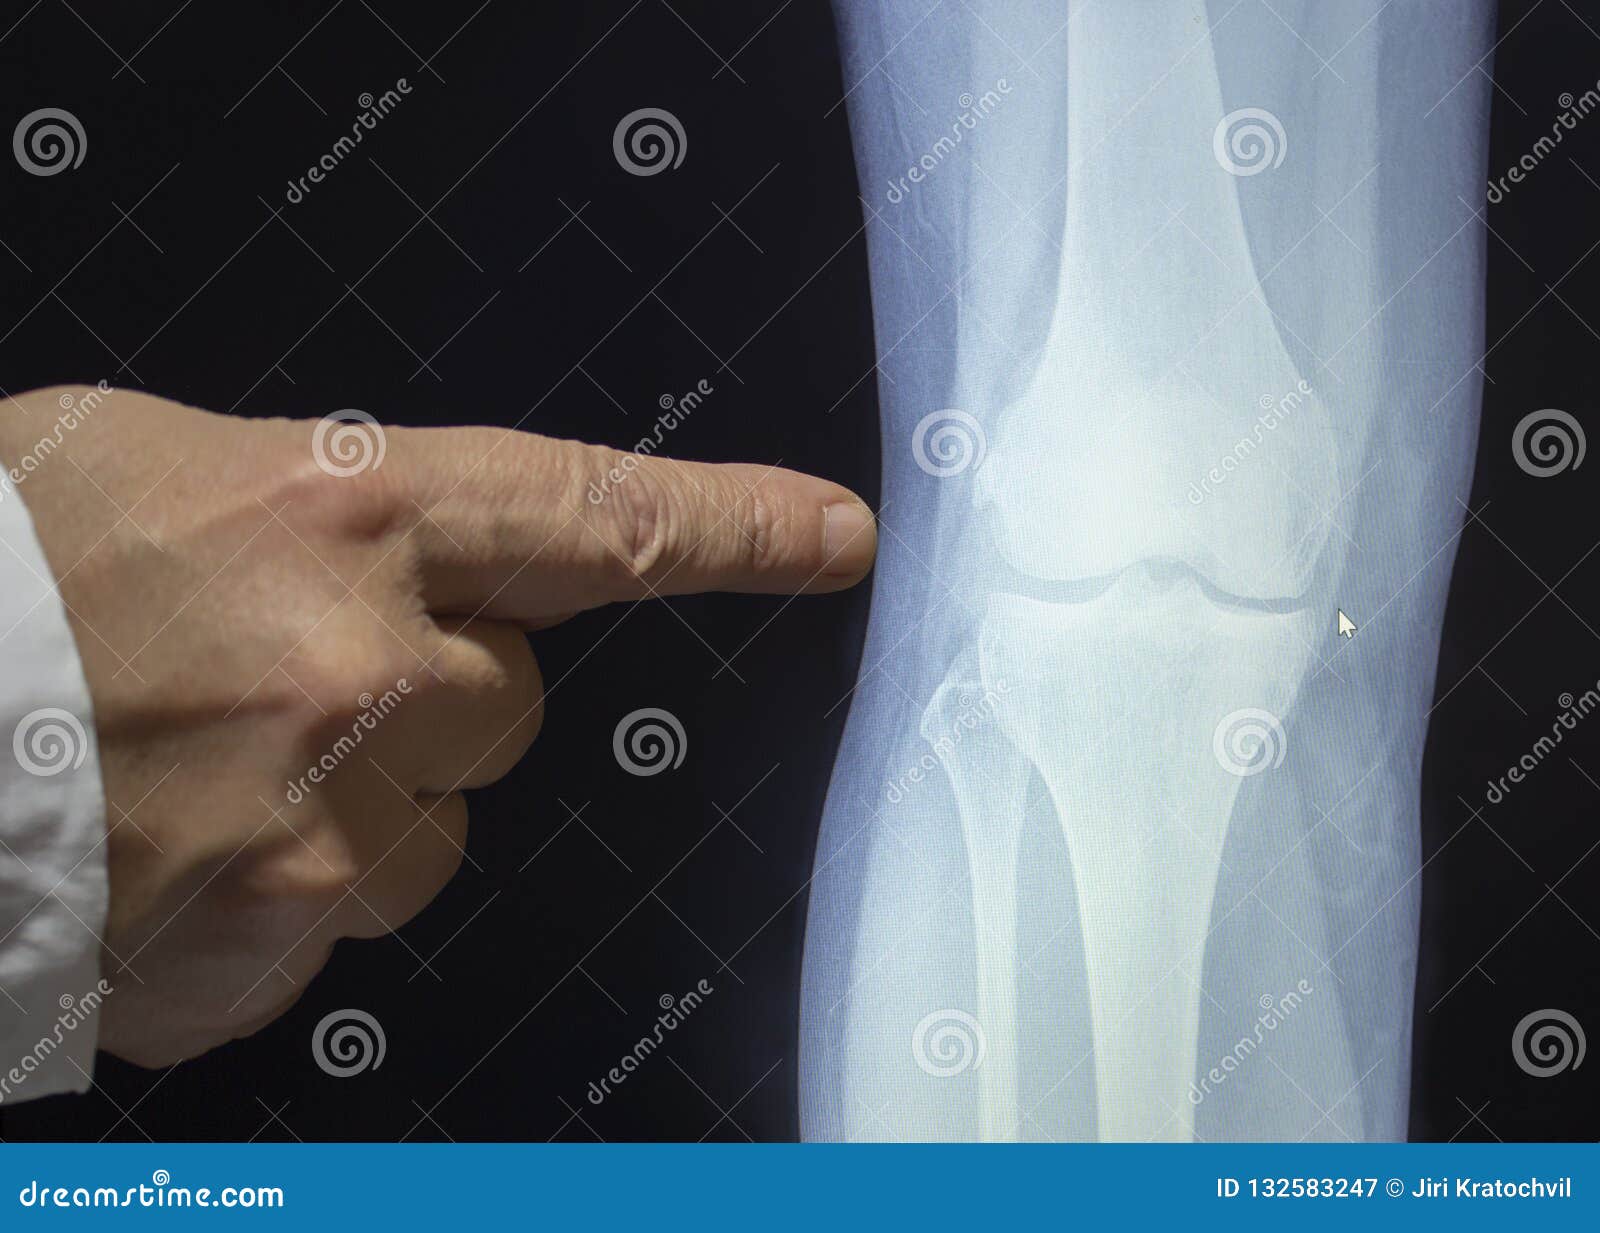 Трещина в организме. Рентген колена. Рентген коленного сустава. Снимки коленного сустава.